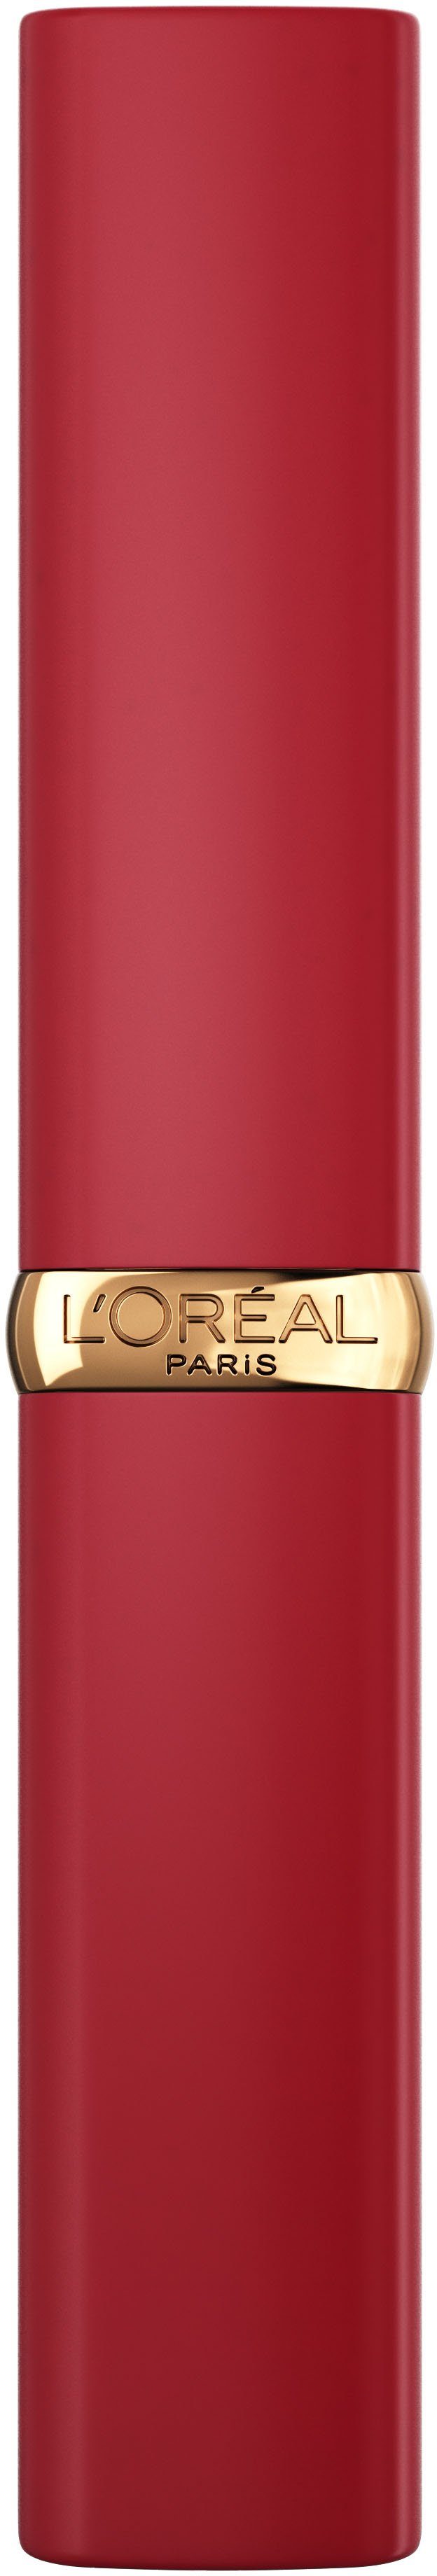 PARIS Riche Lippenpflegestift Intense Color L'ORÉAL Matte Volume